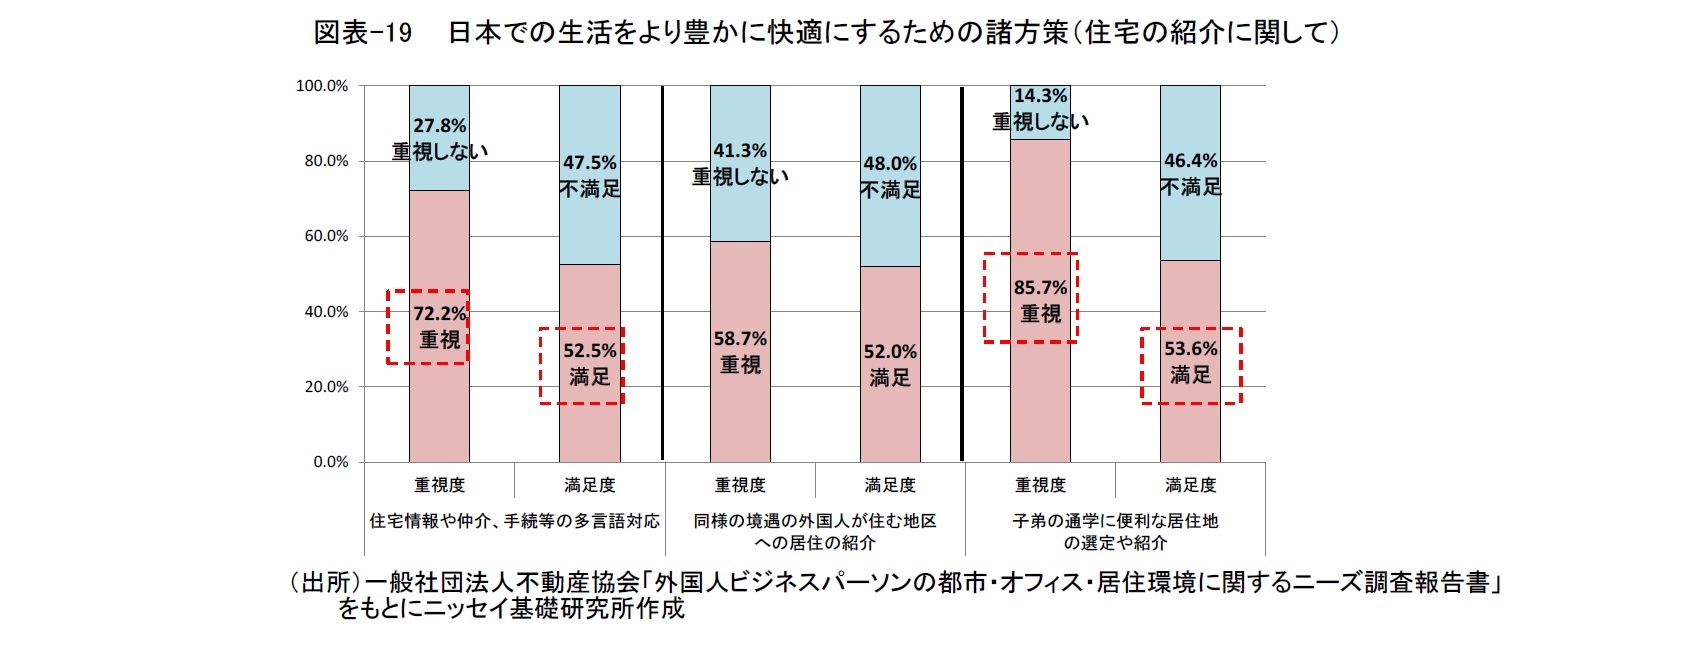 図表-19 　日本での生活をより豊かに快適にするための諸方策（住宅の紹介に関して）